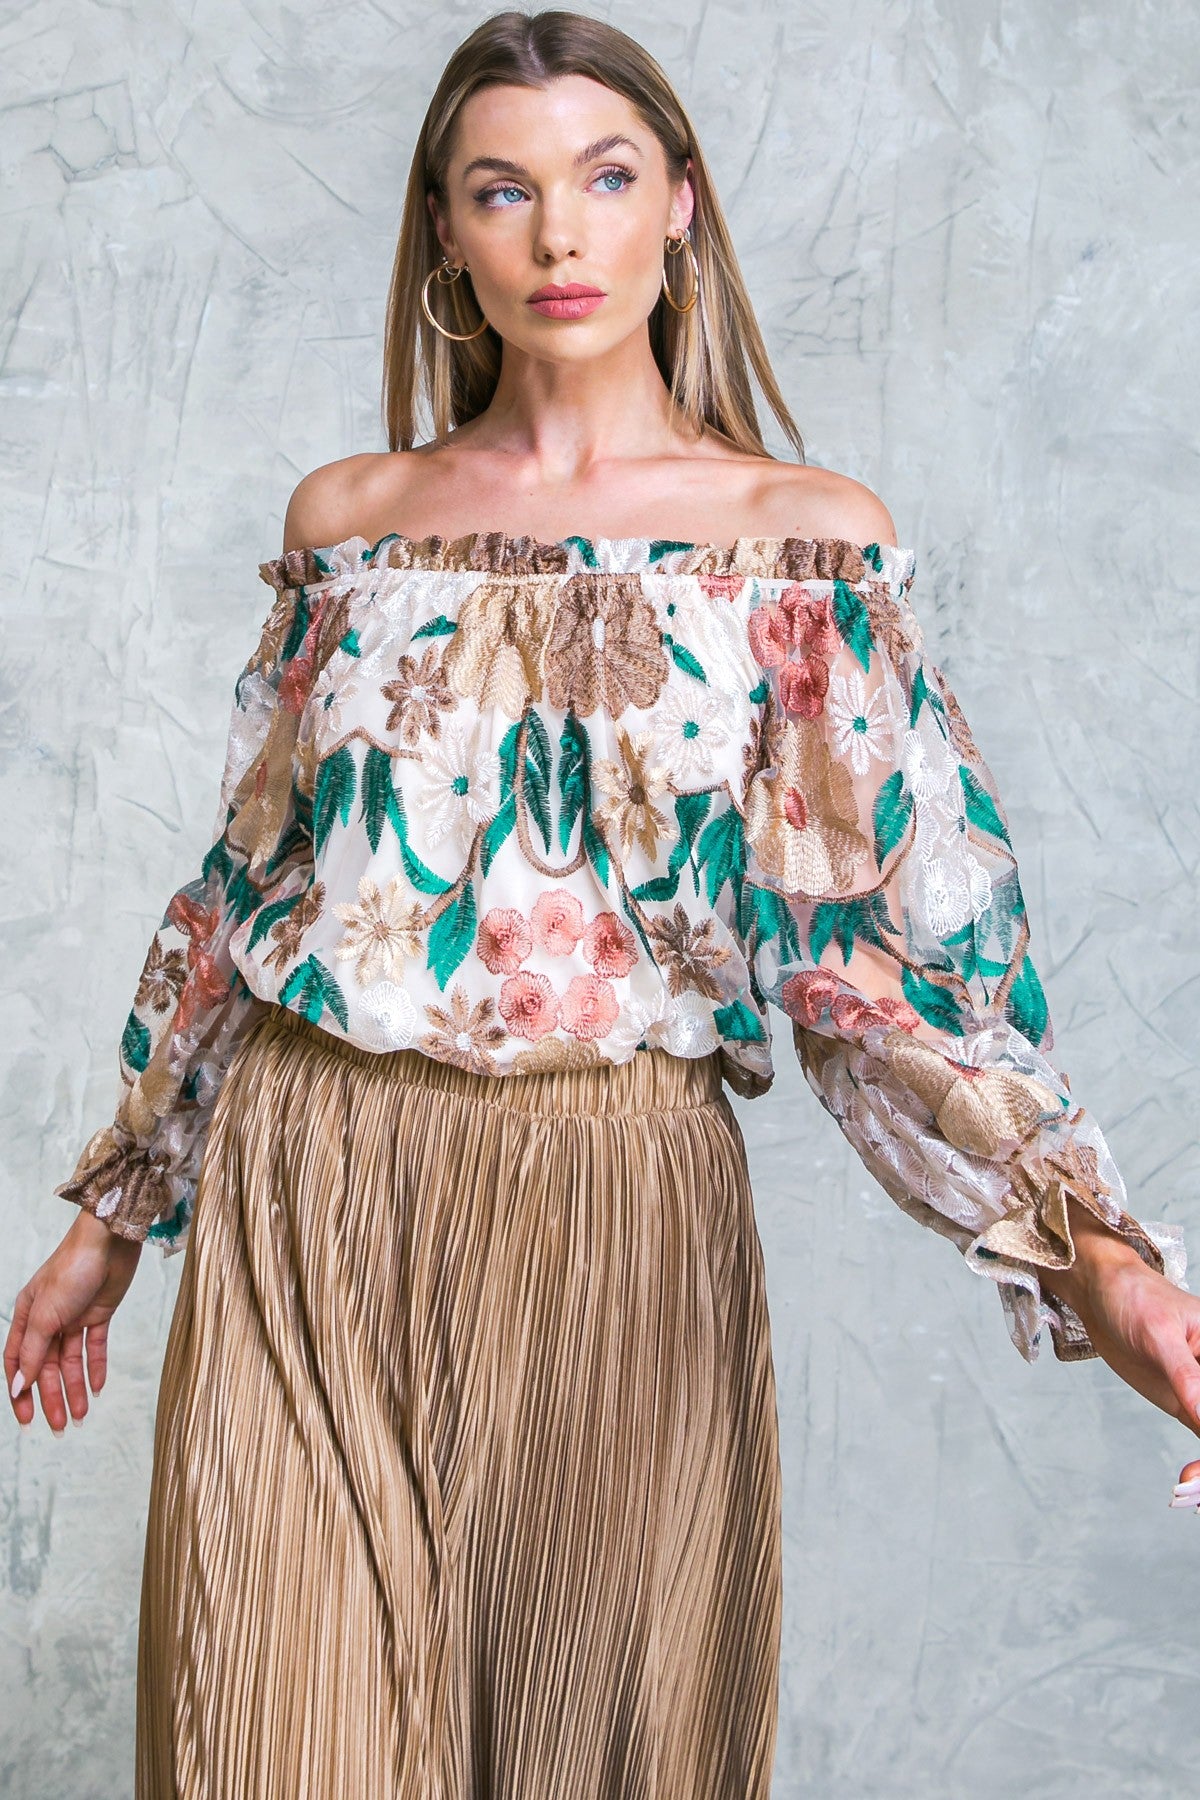 Samantha Floral Off the Shoulder Embroidered Blouse - Bronze Teal Multi